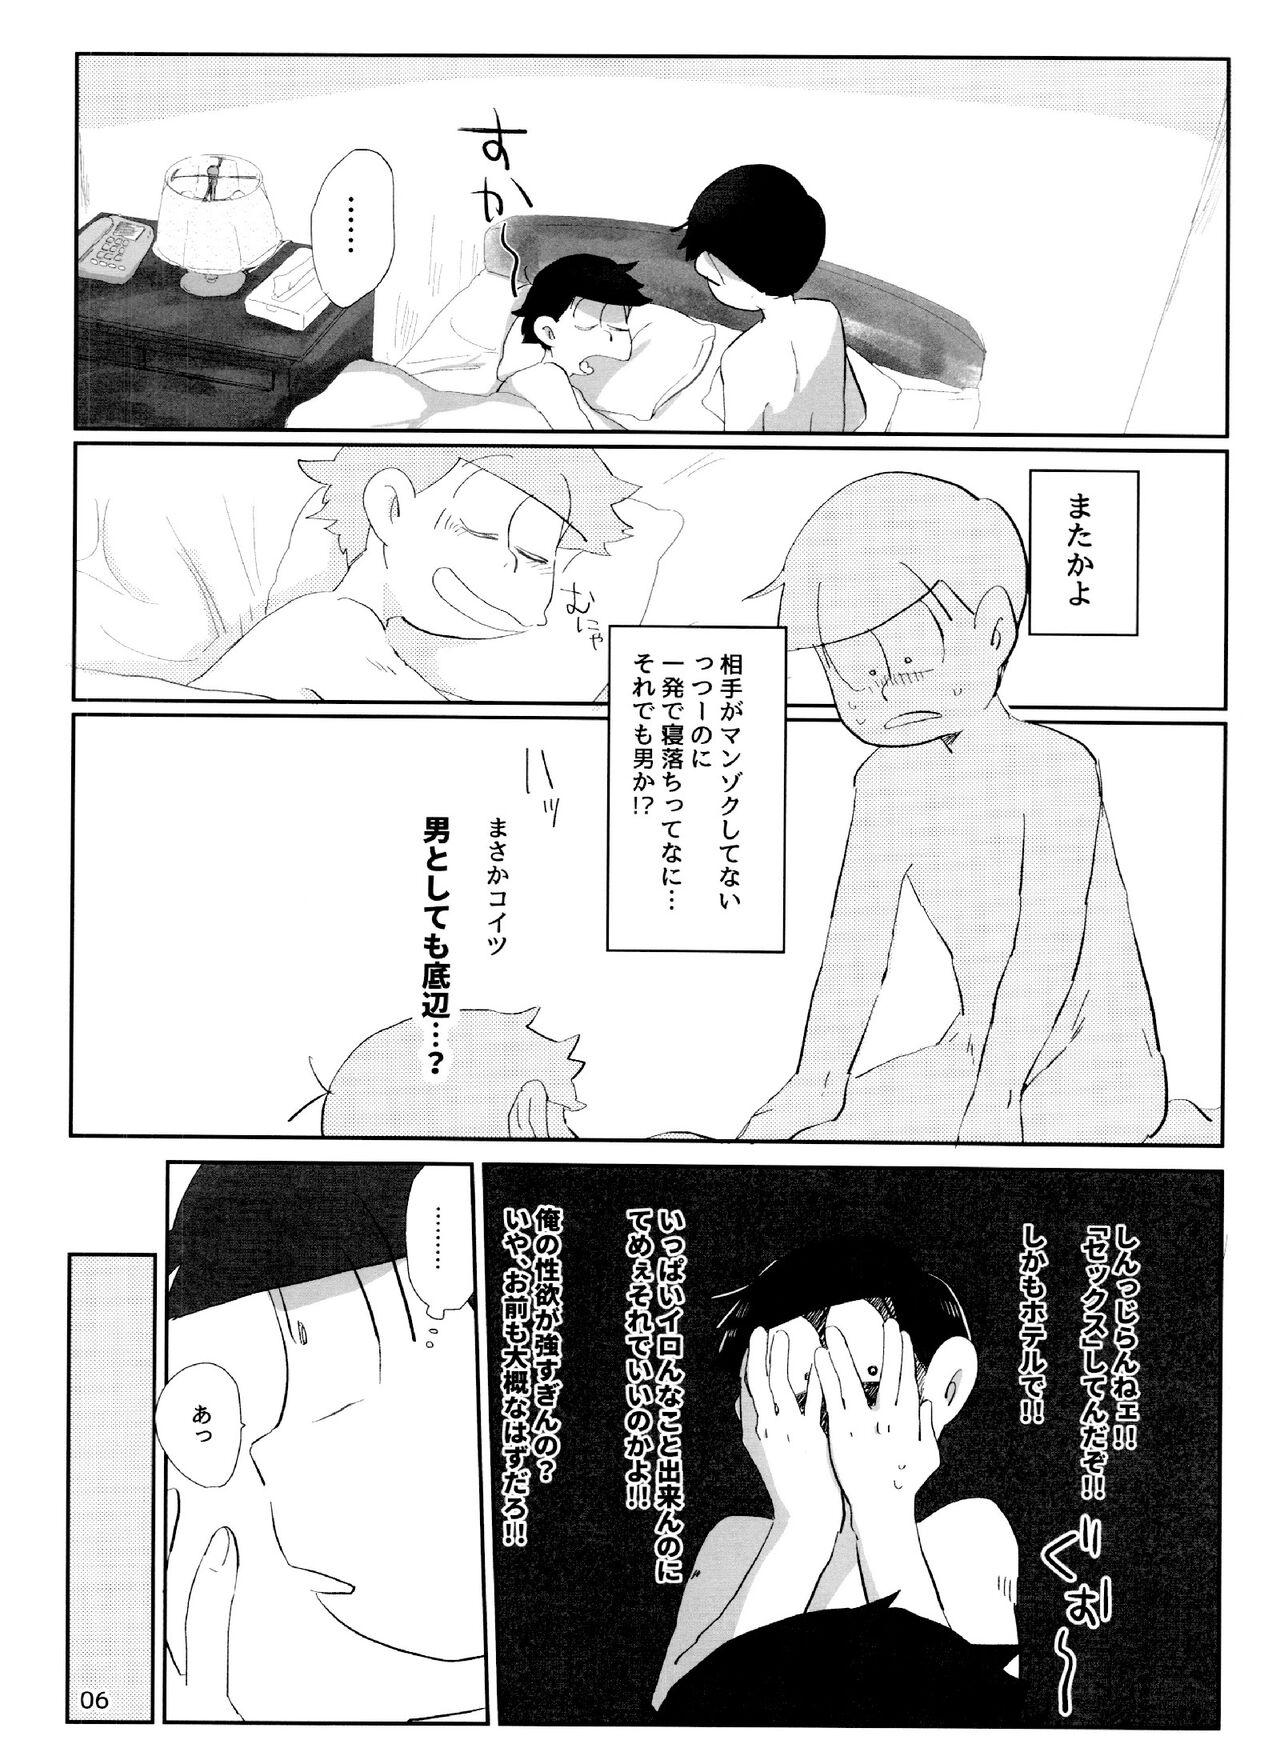 Teasing yoi kono × × hon - Osomatsu san Face Fuck - Page 6